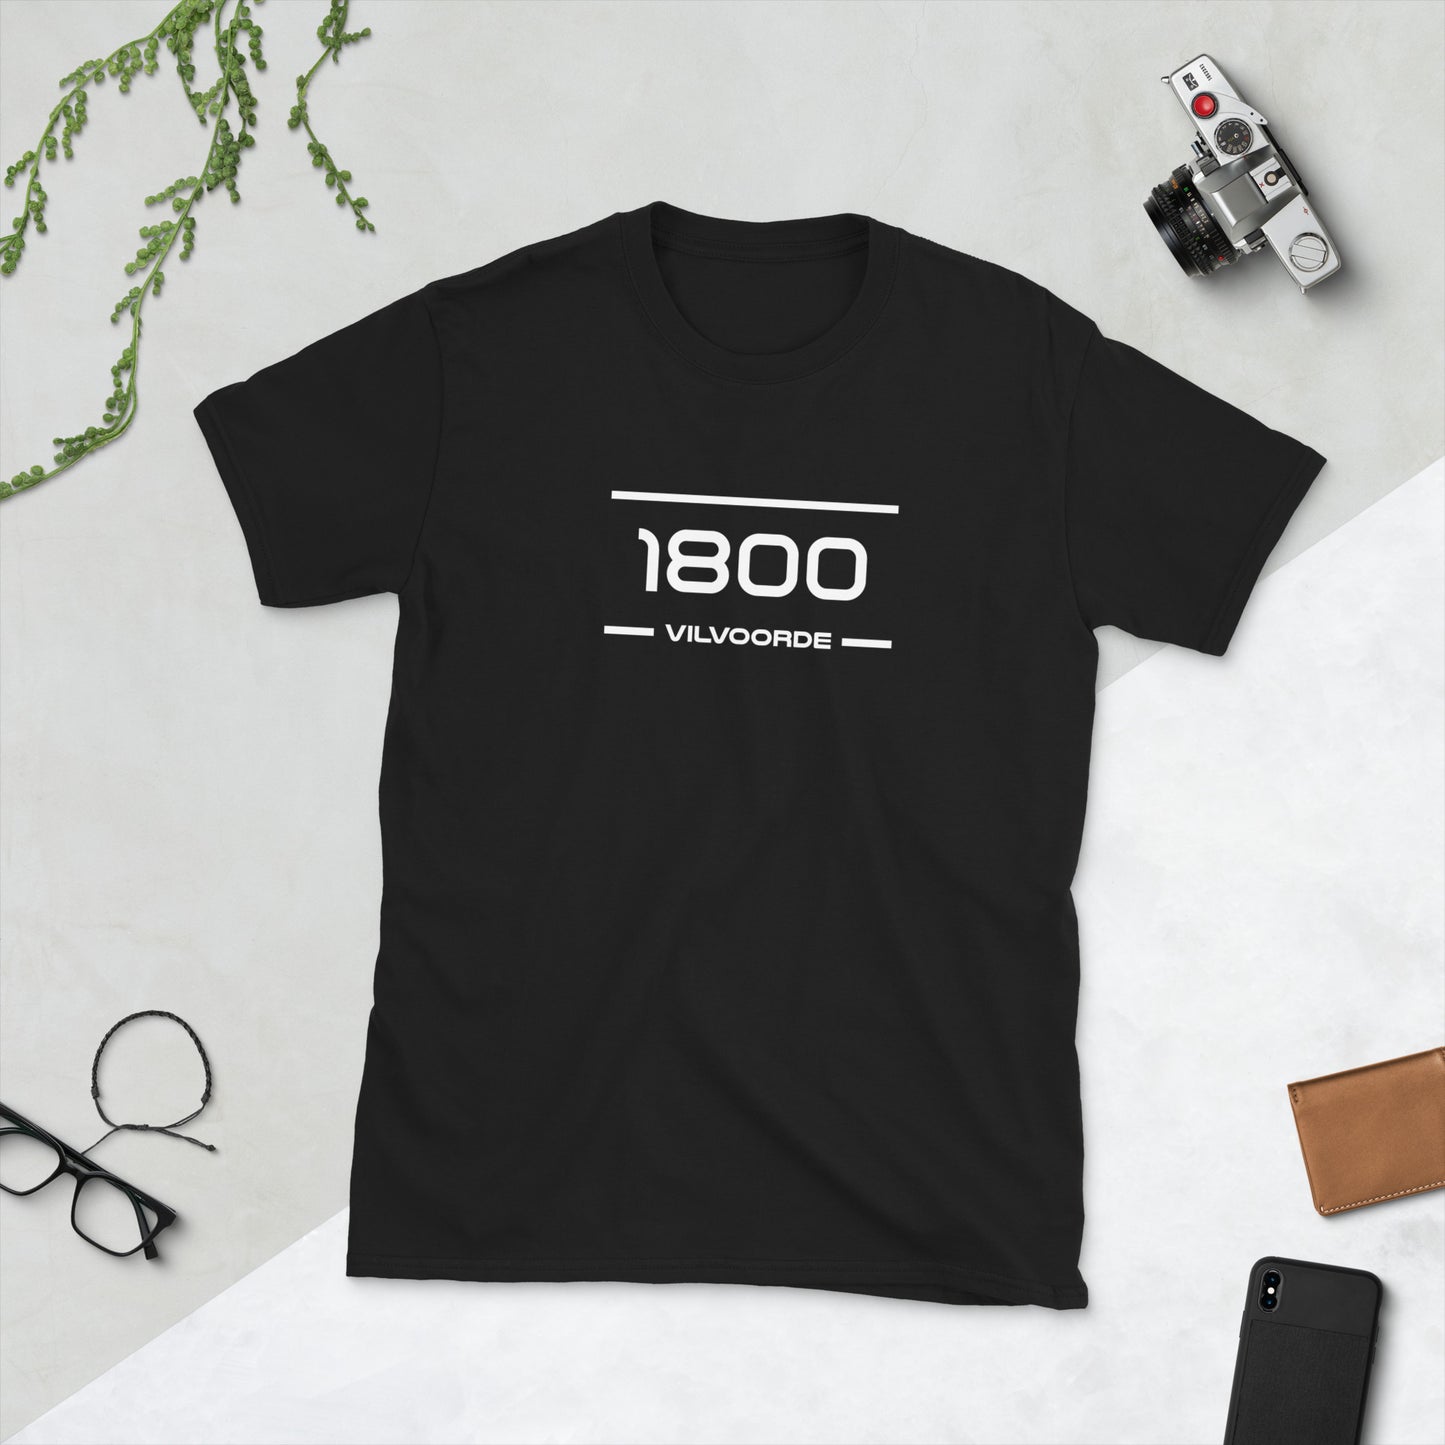 Tshirt - 1800 - Vilvoorde